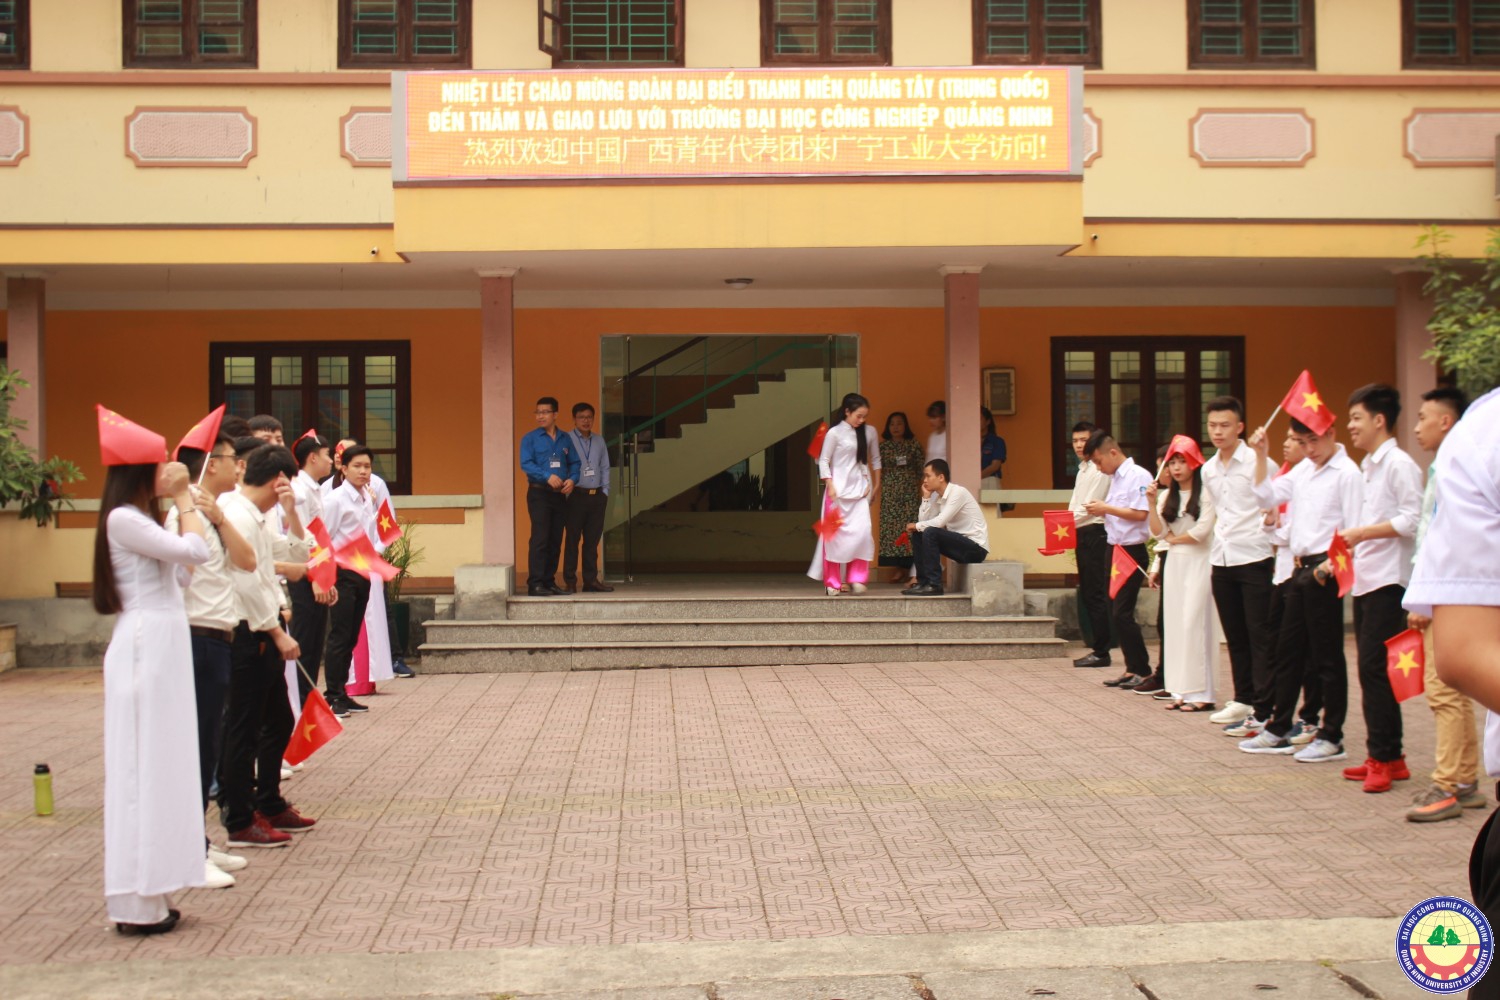 Giao lưu Thanh niên Quảng Tây Trung Quốc và Trường ĐHCN Quảng Ninh